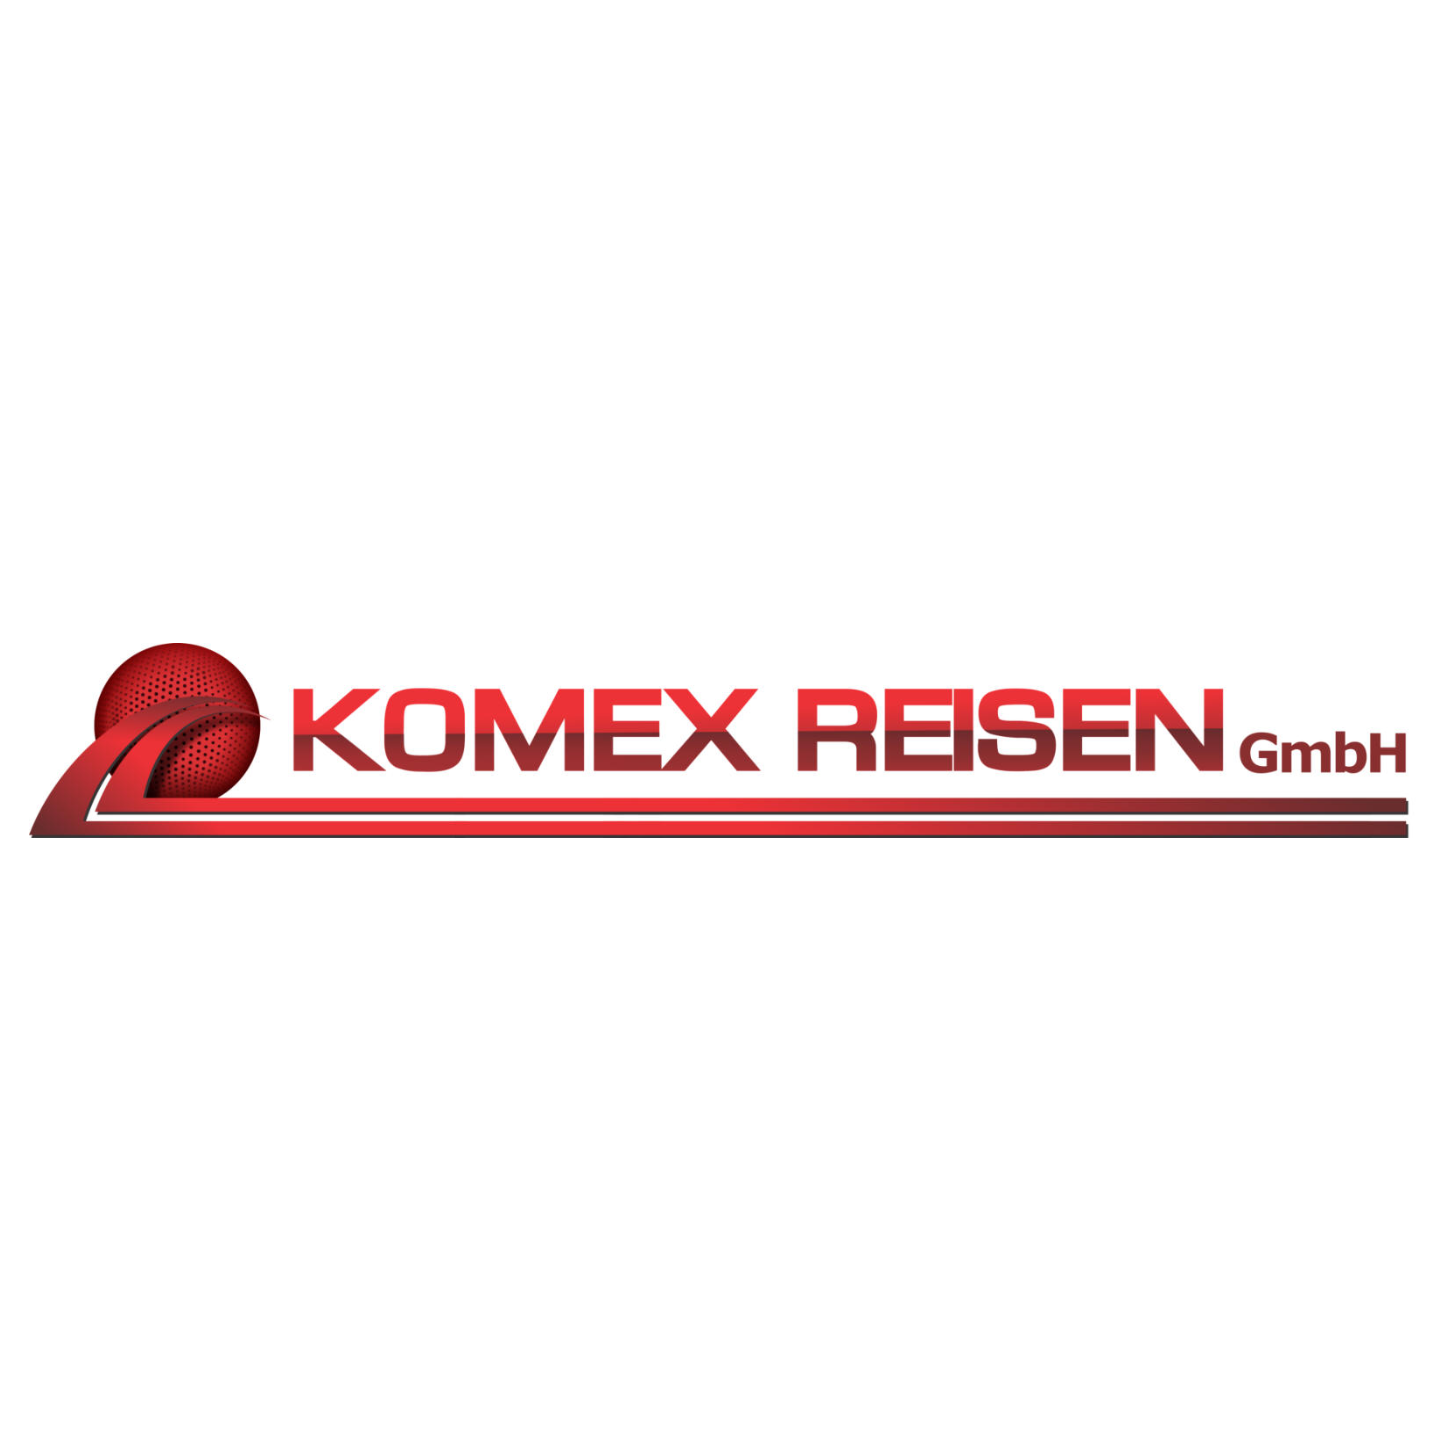 Komex-Reisen GmbH